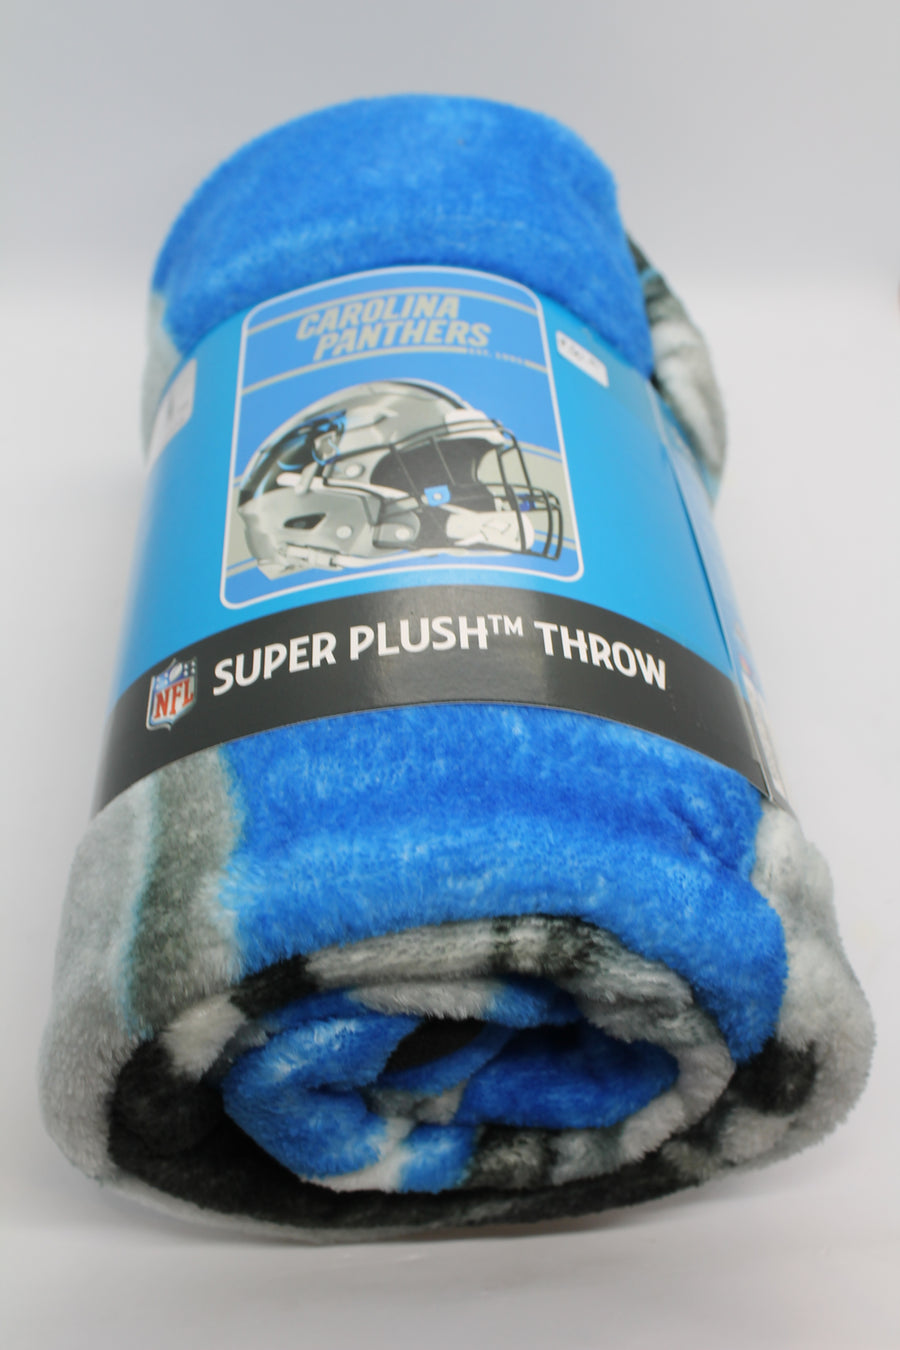 Carolina Panthers Super Plush Throw (Blanket)